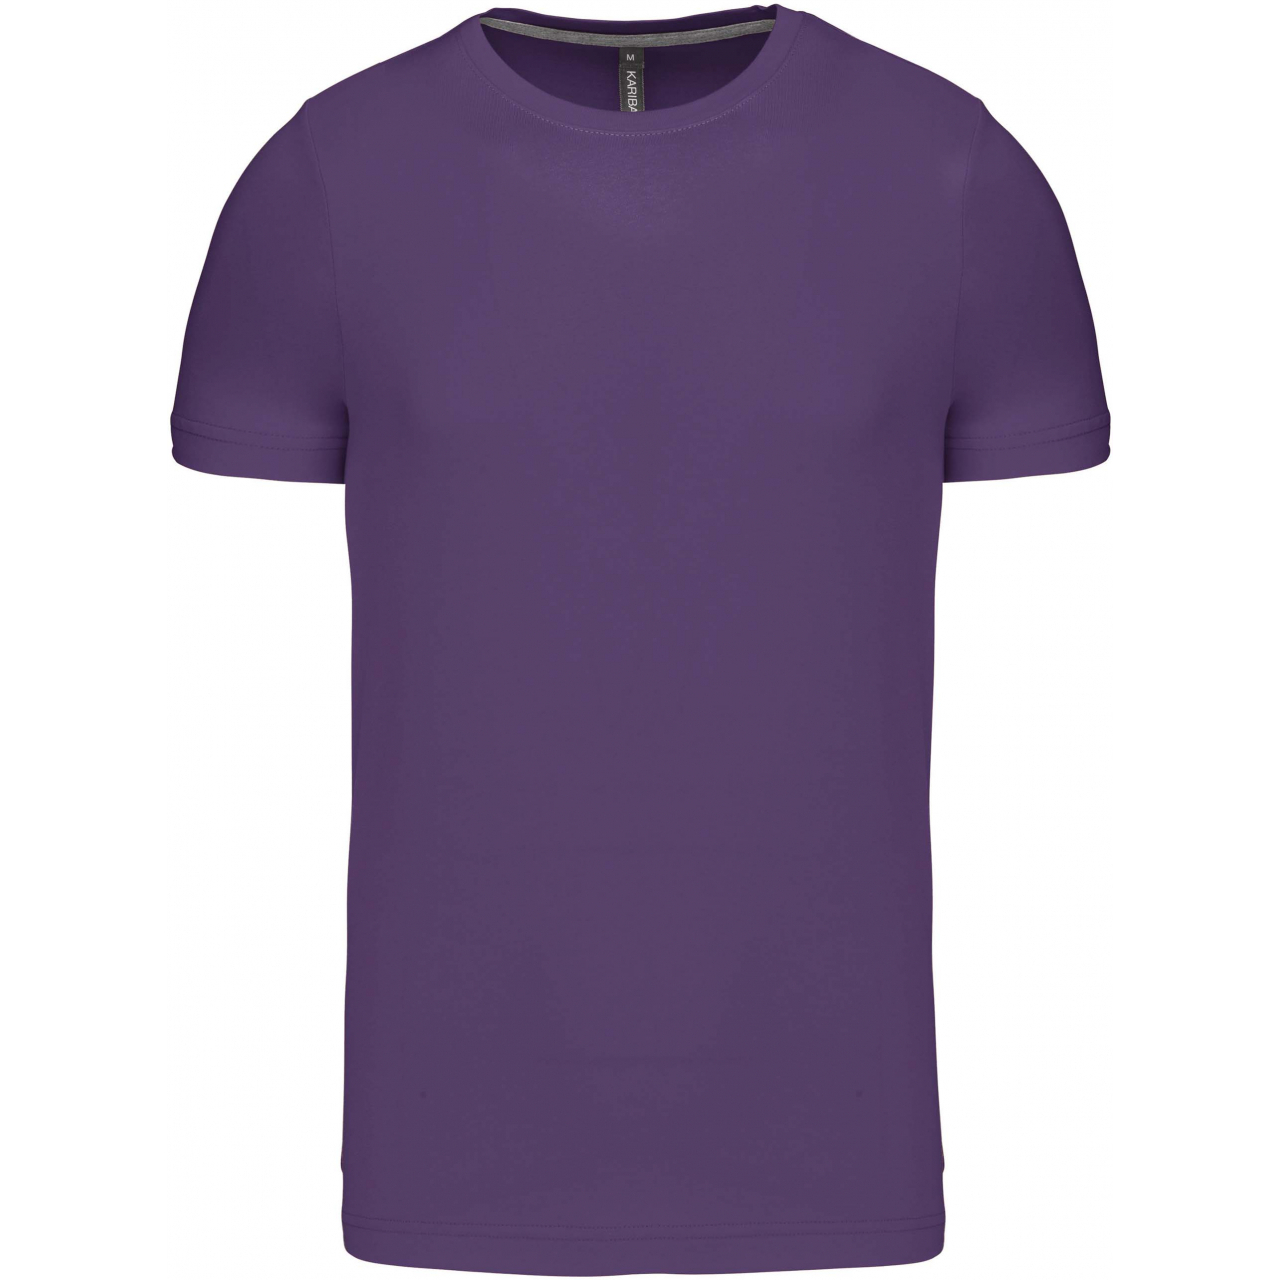 Pánské tričko Kariban krátký rukáv - fialové, M